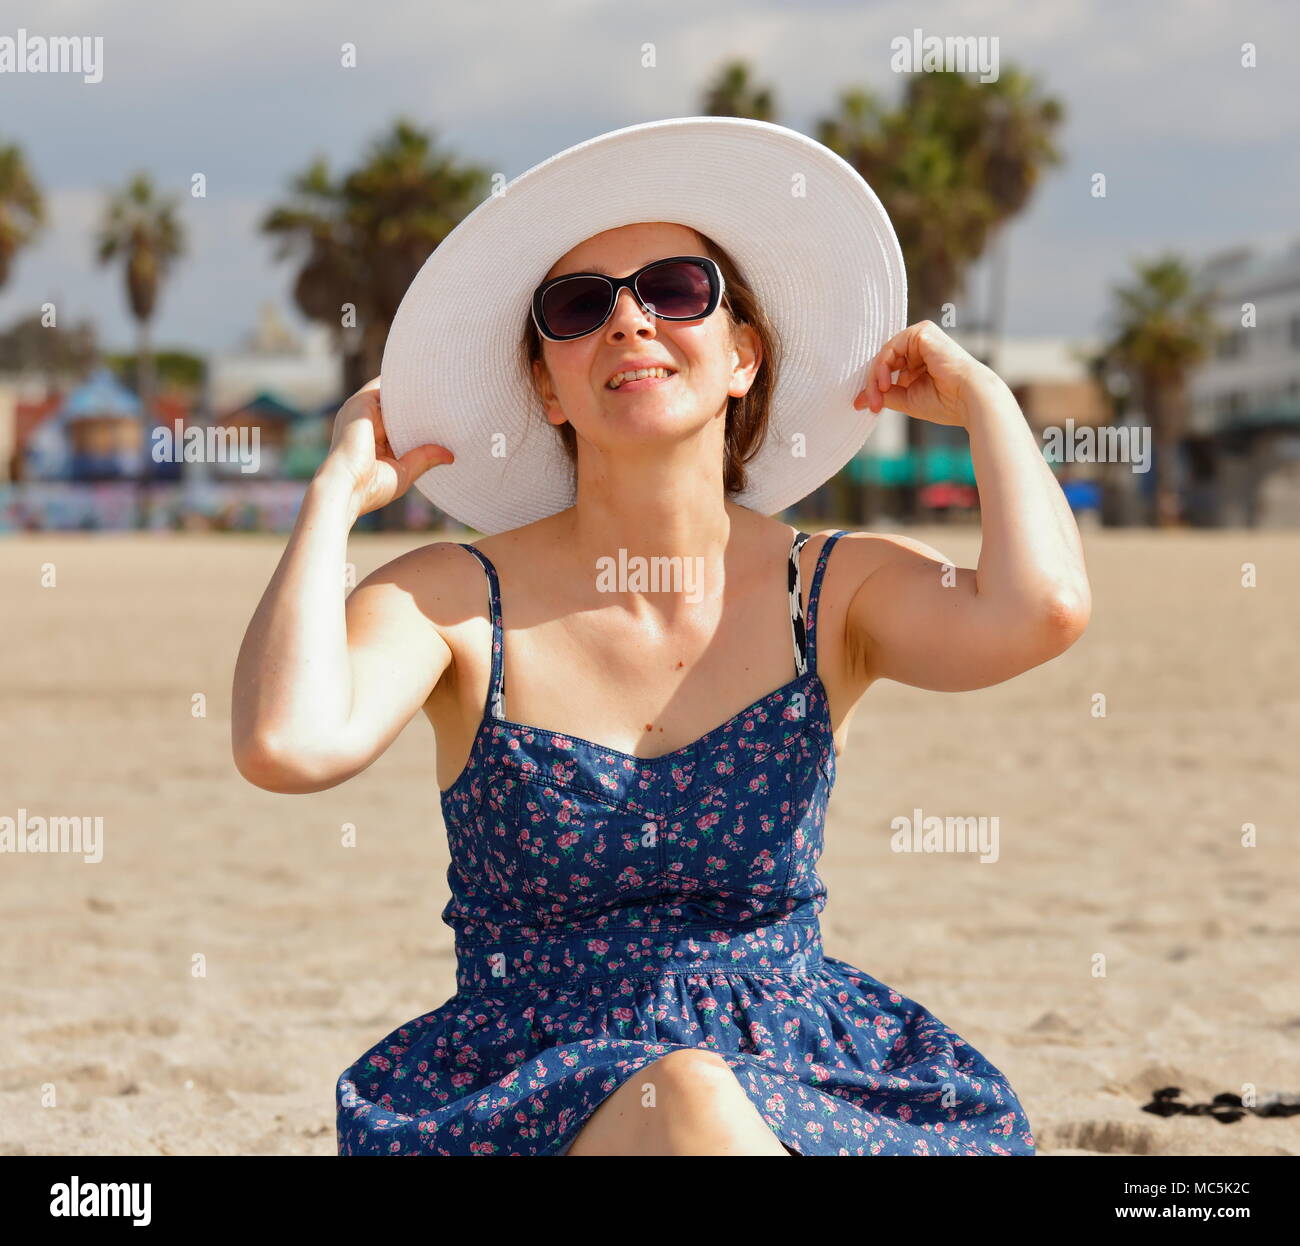 Jeune femme en blanc chapeau, lunettes de soleil, et bleu robe d'été. Elle est maintenant le bord de son chapeau et a sa tête légèrement inclinée vers le haut Banque D'Images